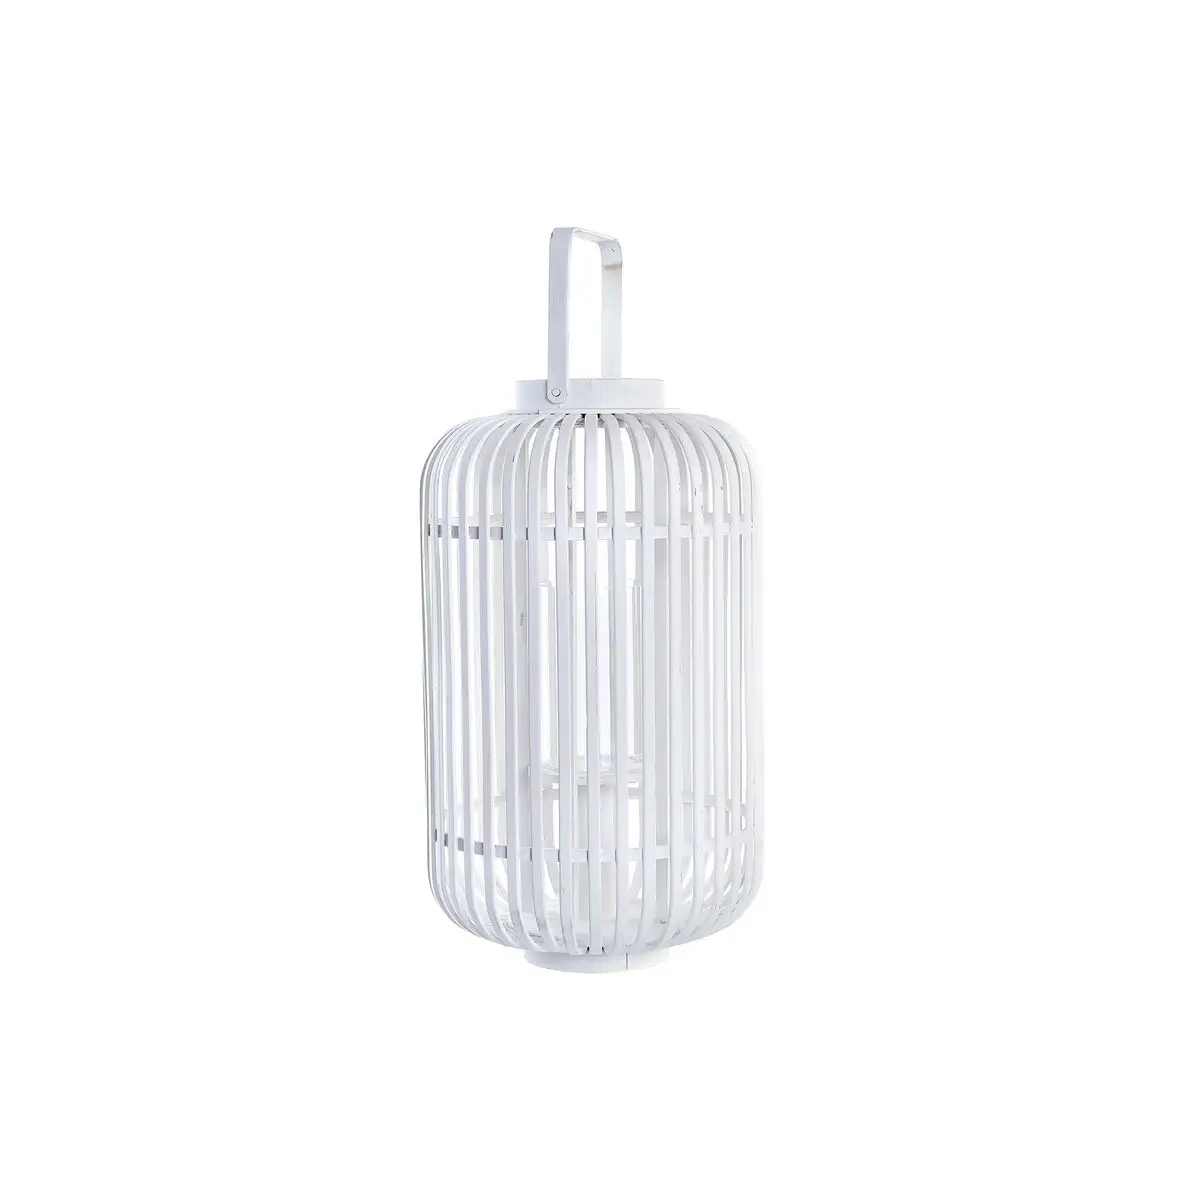 Lanterne dkd home decor verre blanc bambou 28 x 28 x 47 cm _6613. DIAYTAR SENEGAL - Votre Portail Vers l'Exclusivité. Explorez notre boutique en ligne pour trouver des produits uniques et exclusifs, conçus pour les amateurs de qualité.